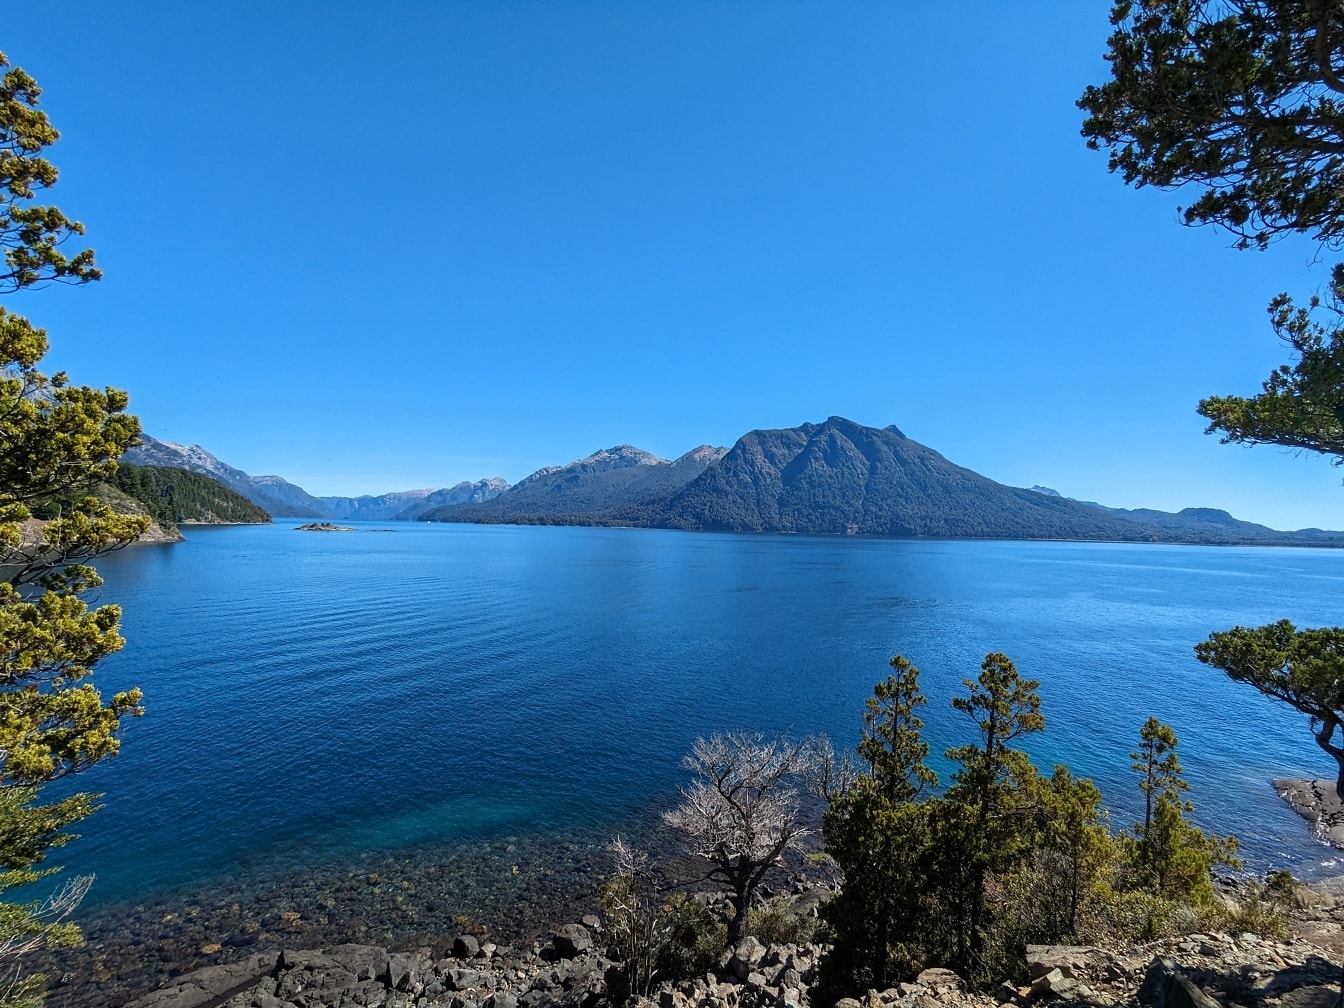 Fantastična panorama tamnoplavog jezera u nacionalnom parku Nahuel Huapi u Argentini